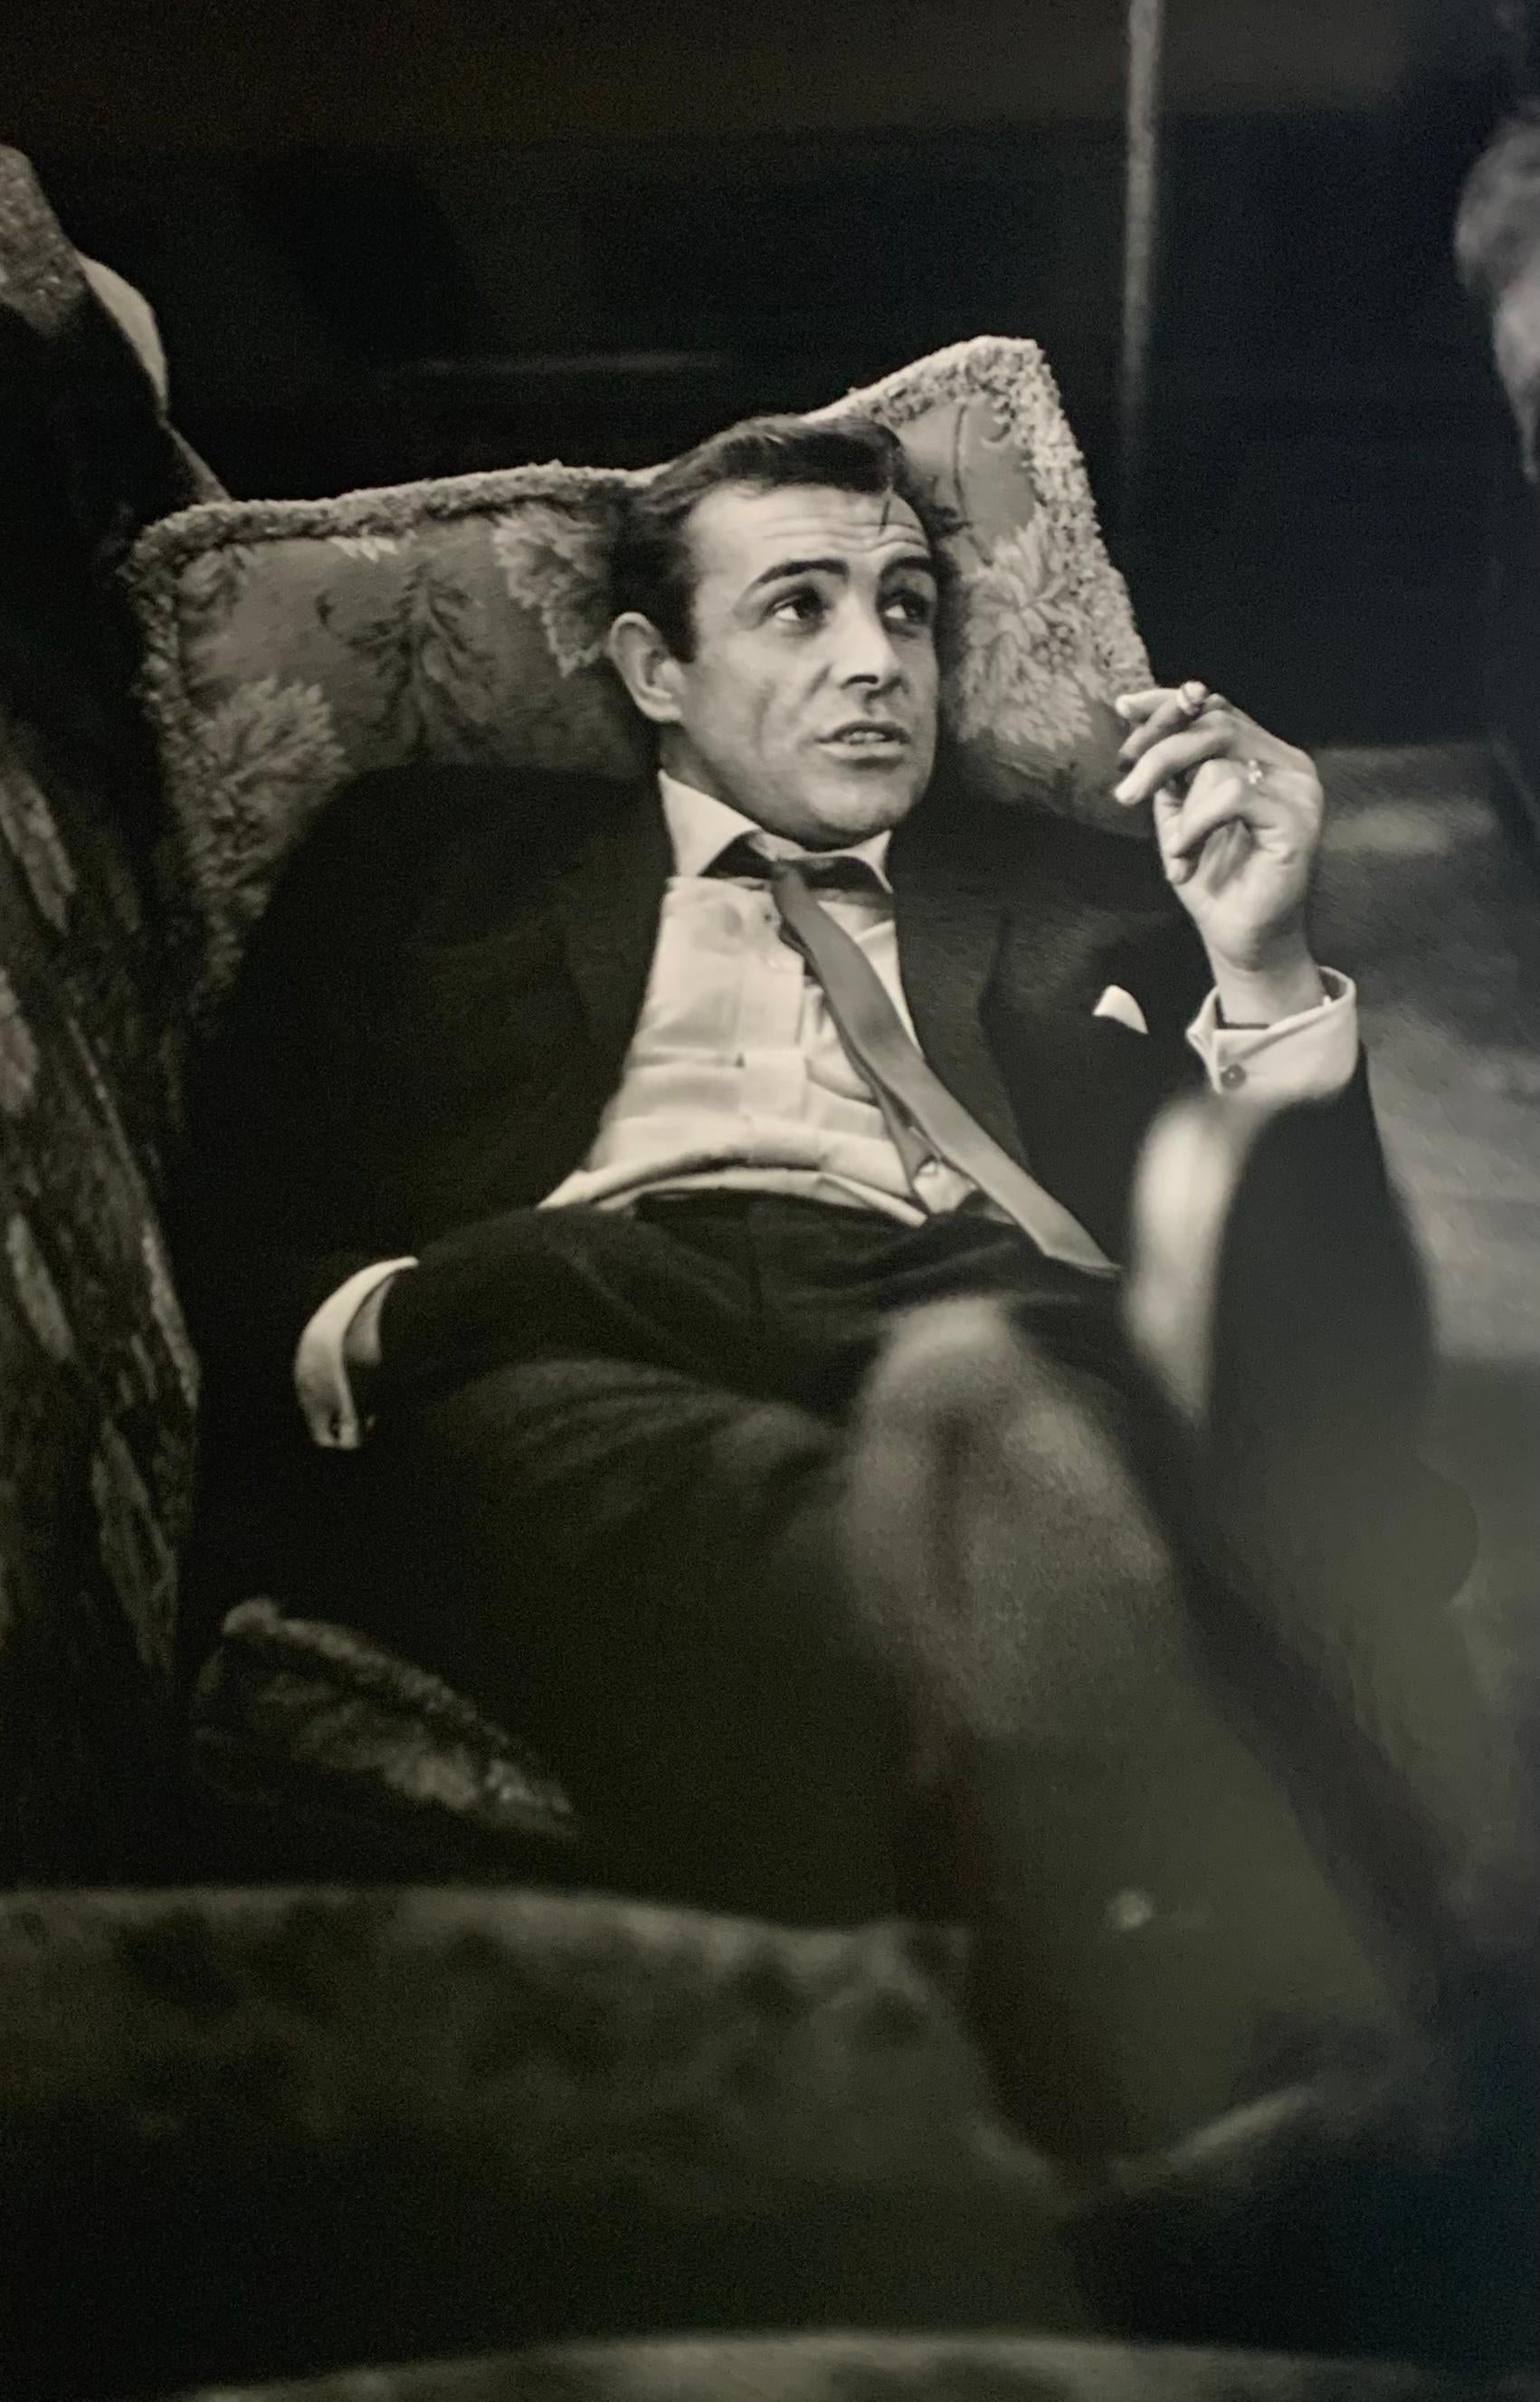 Portrait Photograph Bob Haswell - « Sexy Scot » - Imprimé à la gélatine argentique encadré James Bond 007